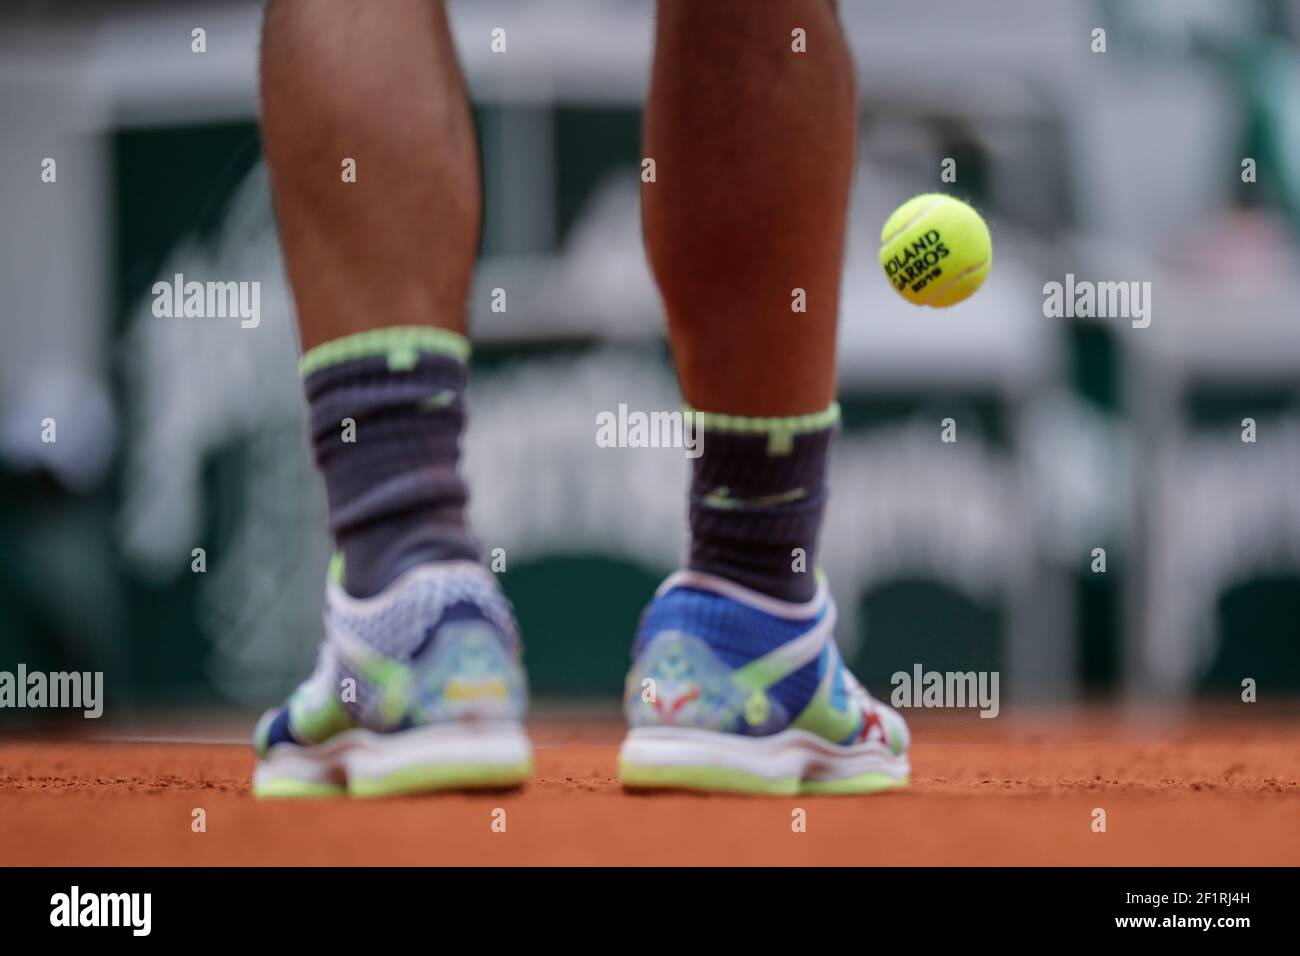 Rafael NADAL (ESP) zapatos con la pelota de tenis Roland Garros 2018  durante el Roland-Garros 2019, Grand Slam Tennis Tournament, sorteo final  masculino el 9 de junio de 2019 en el estadio